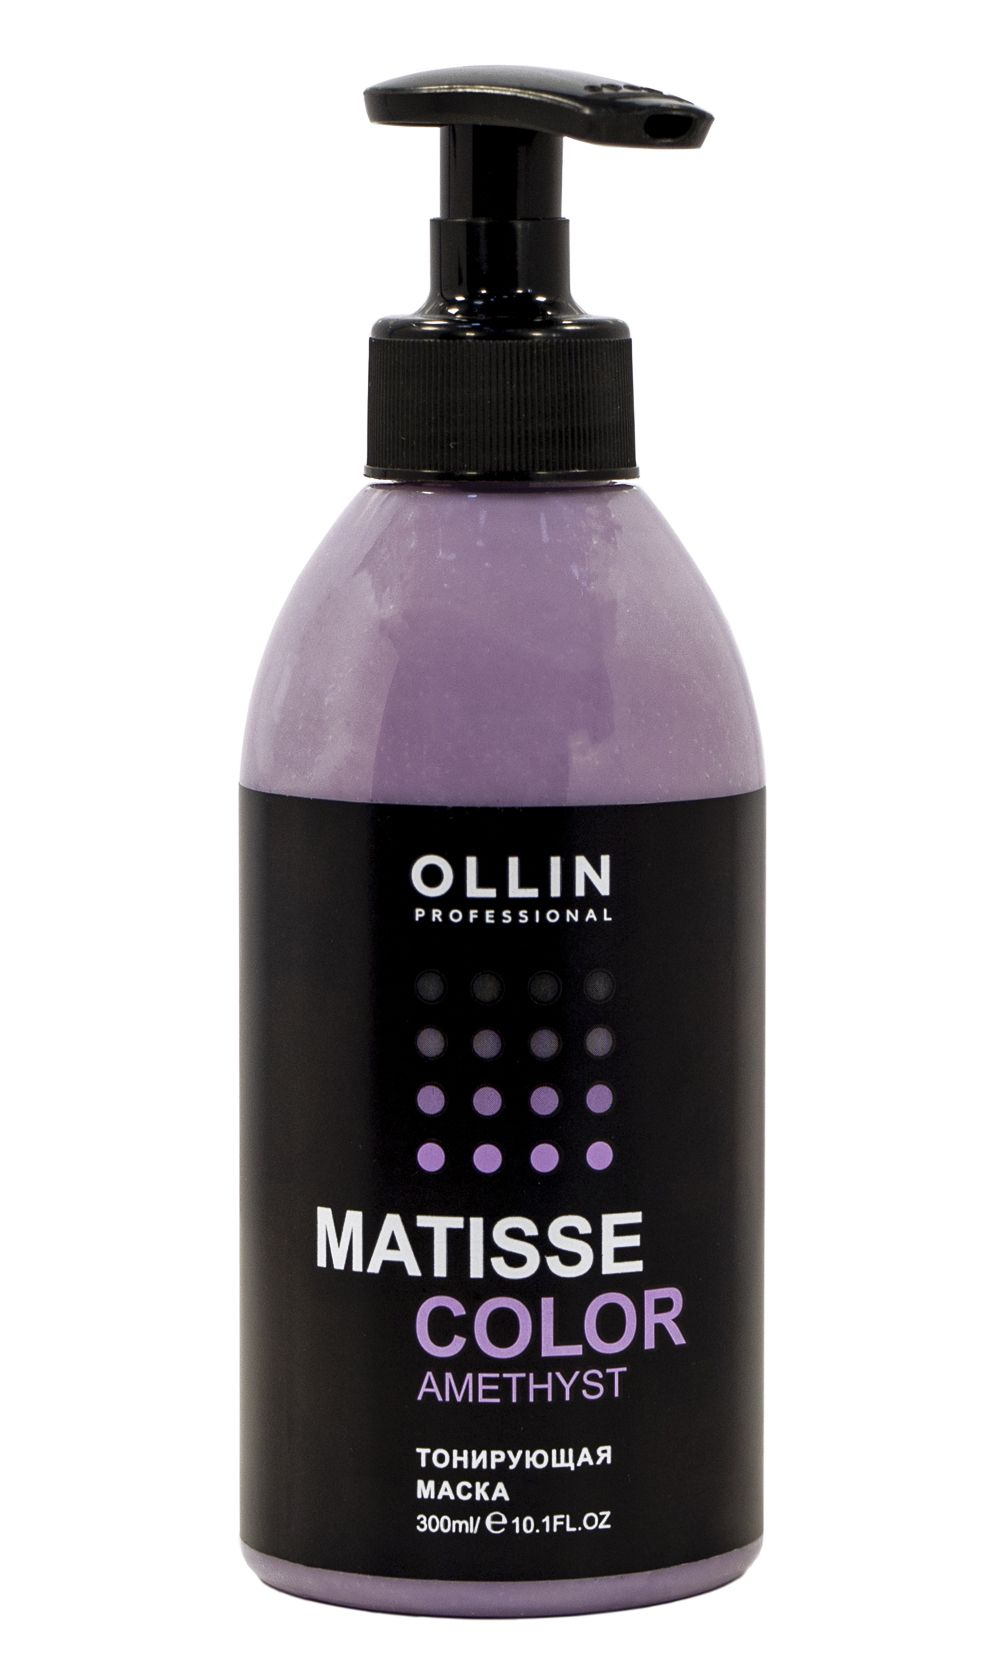 Ollin, Тонирующая маска «Matisse color», Фото интернет-магазин Премиум-Косметика.РФ